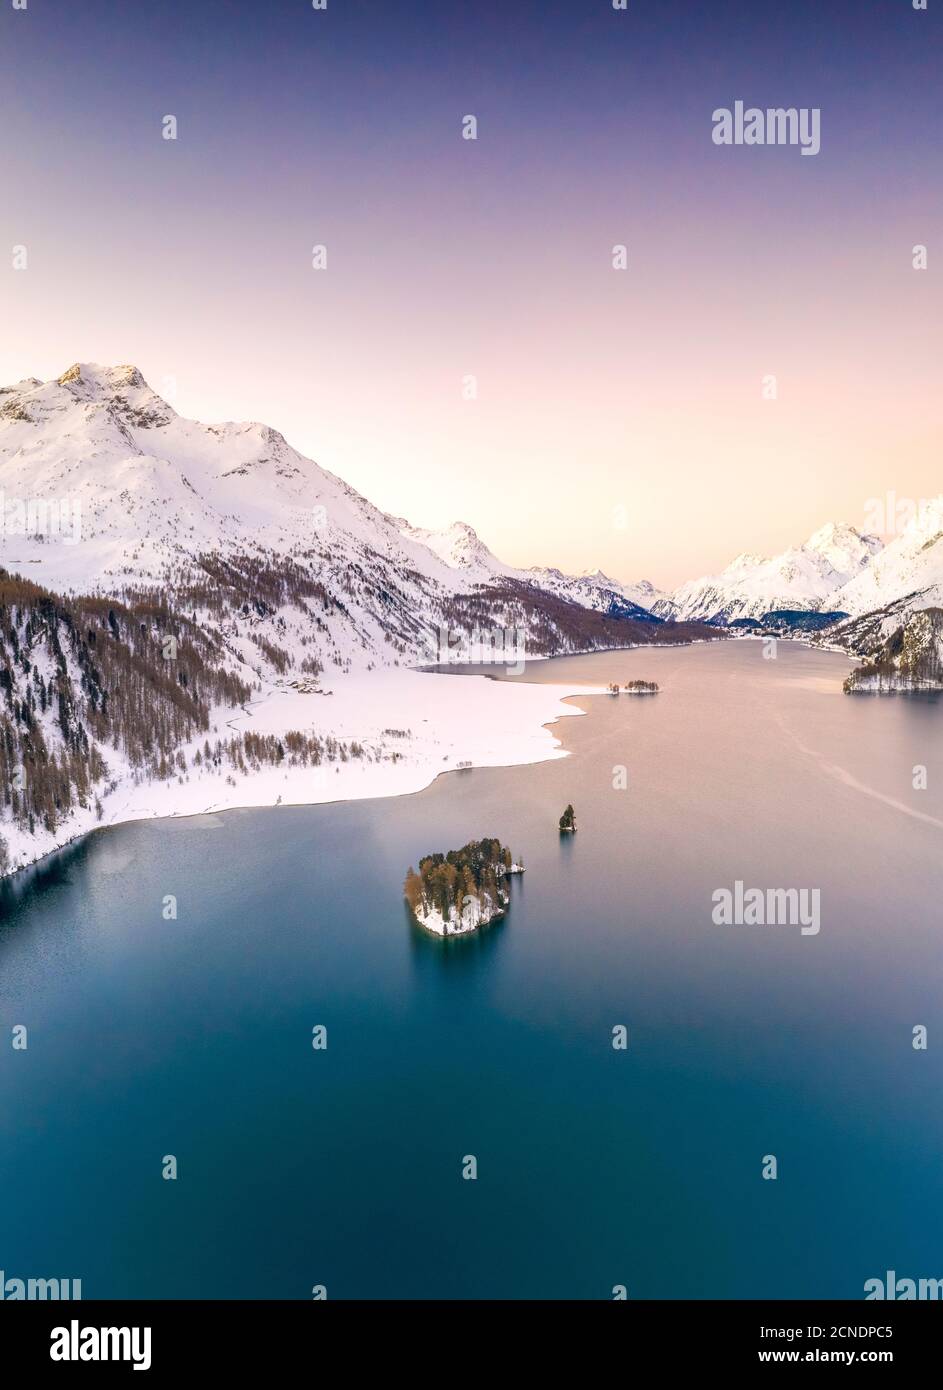 Aérien par drone du lac Sils entouré de sommets enneigés pendant un lever de soleil d'hiver, Engadine, canton de Graubunden, Suisse, Europe Banque D'Images